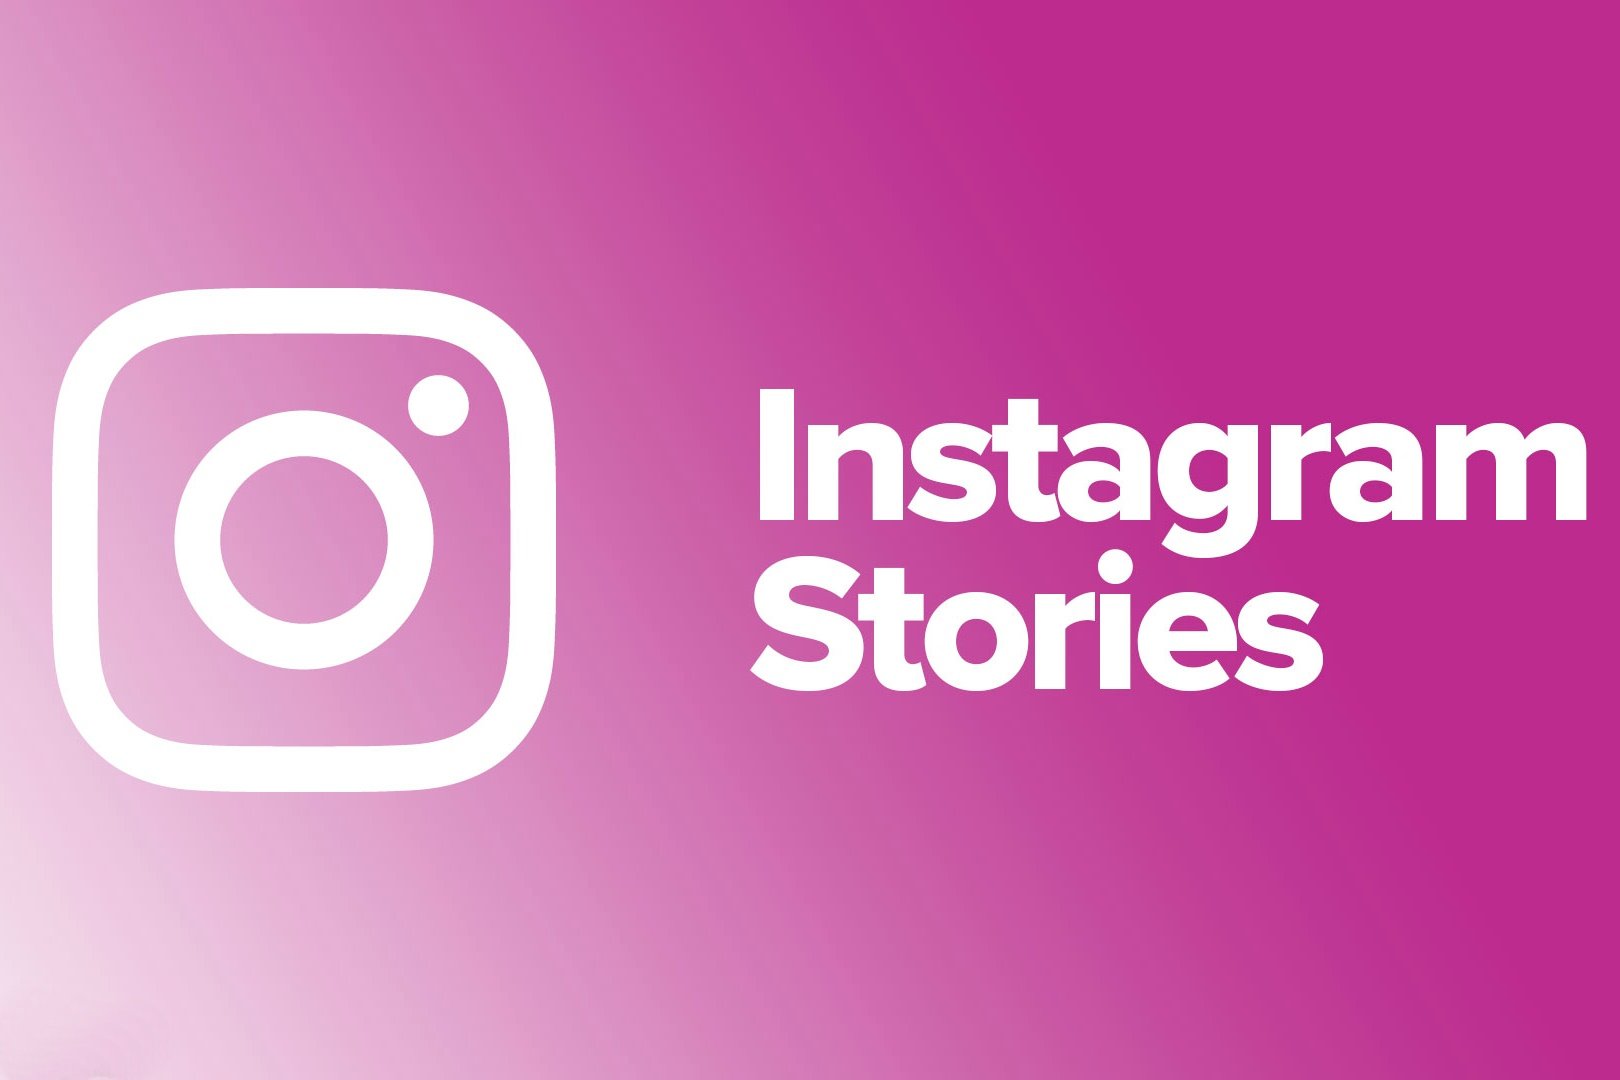 Os GIFs chegaram ao Instagram Stories: saiba como usá-los - Marketing  Digital Vitória - Marketing 365, Telefone: Vitória (27)3299-5151